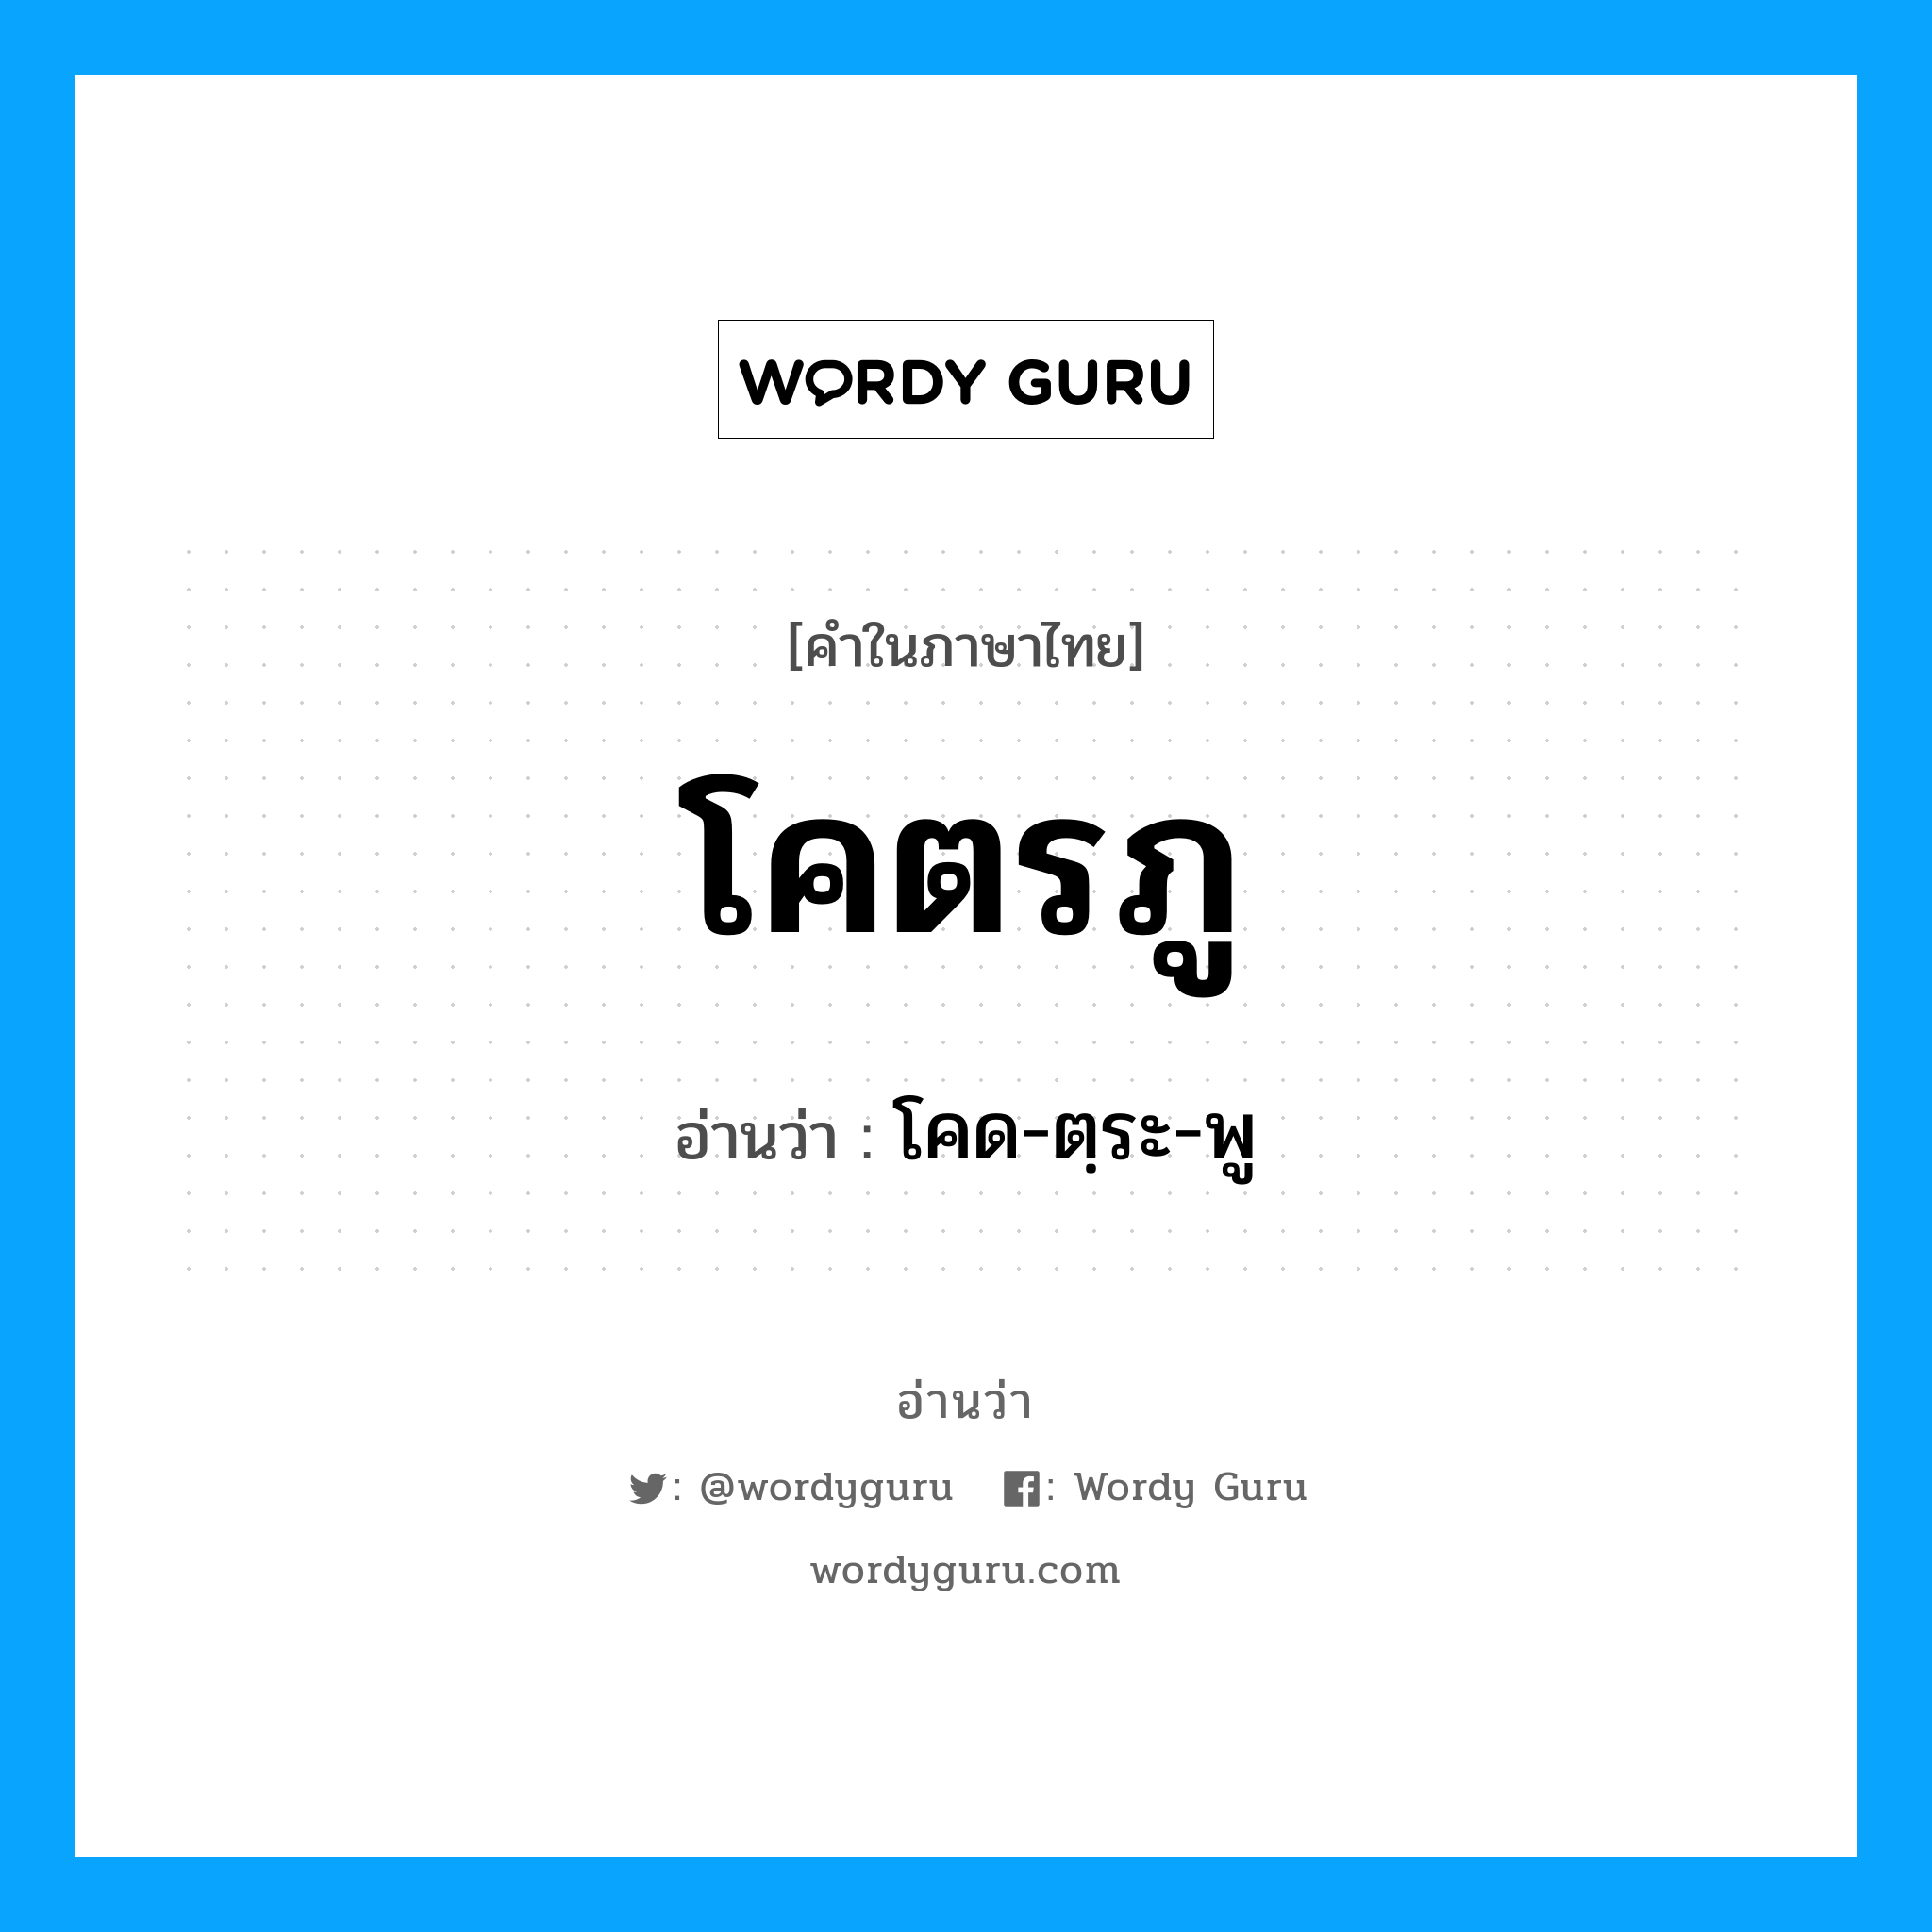 โคด-ตฺระ-พู เป็นคำอ่านของคำไหน?, คำในภาษาไทย โคด-ตฺระ-พู อ่านว่า โคตรภู